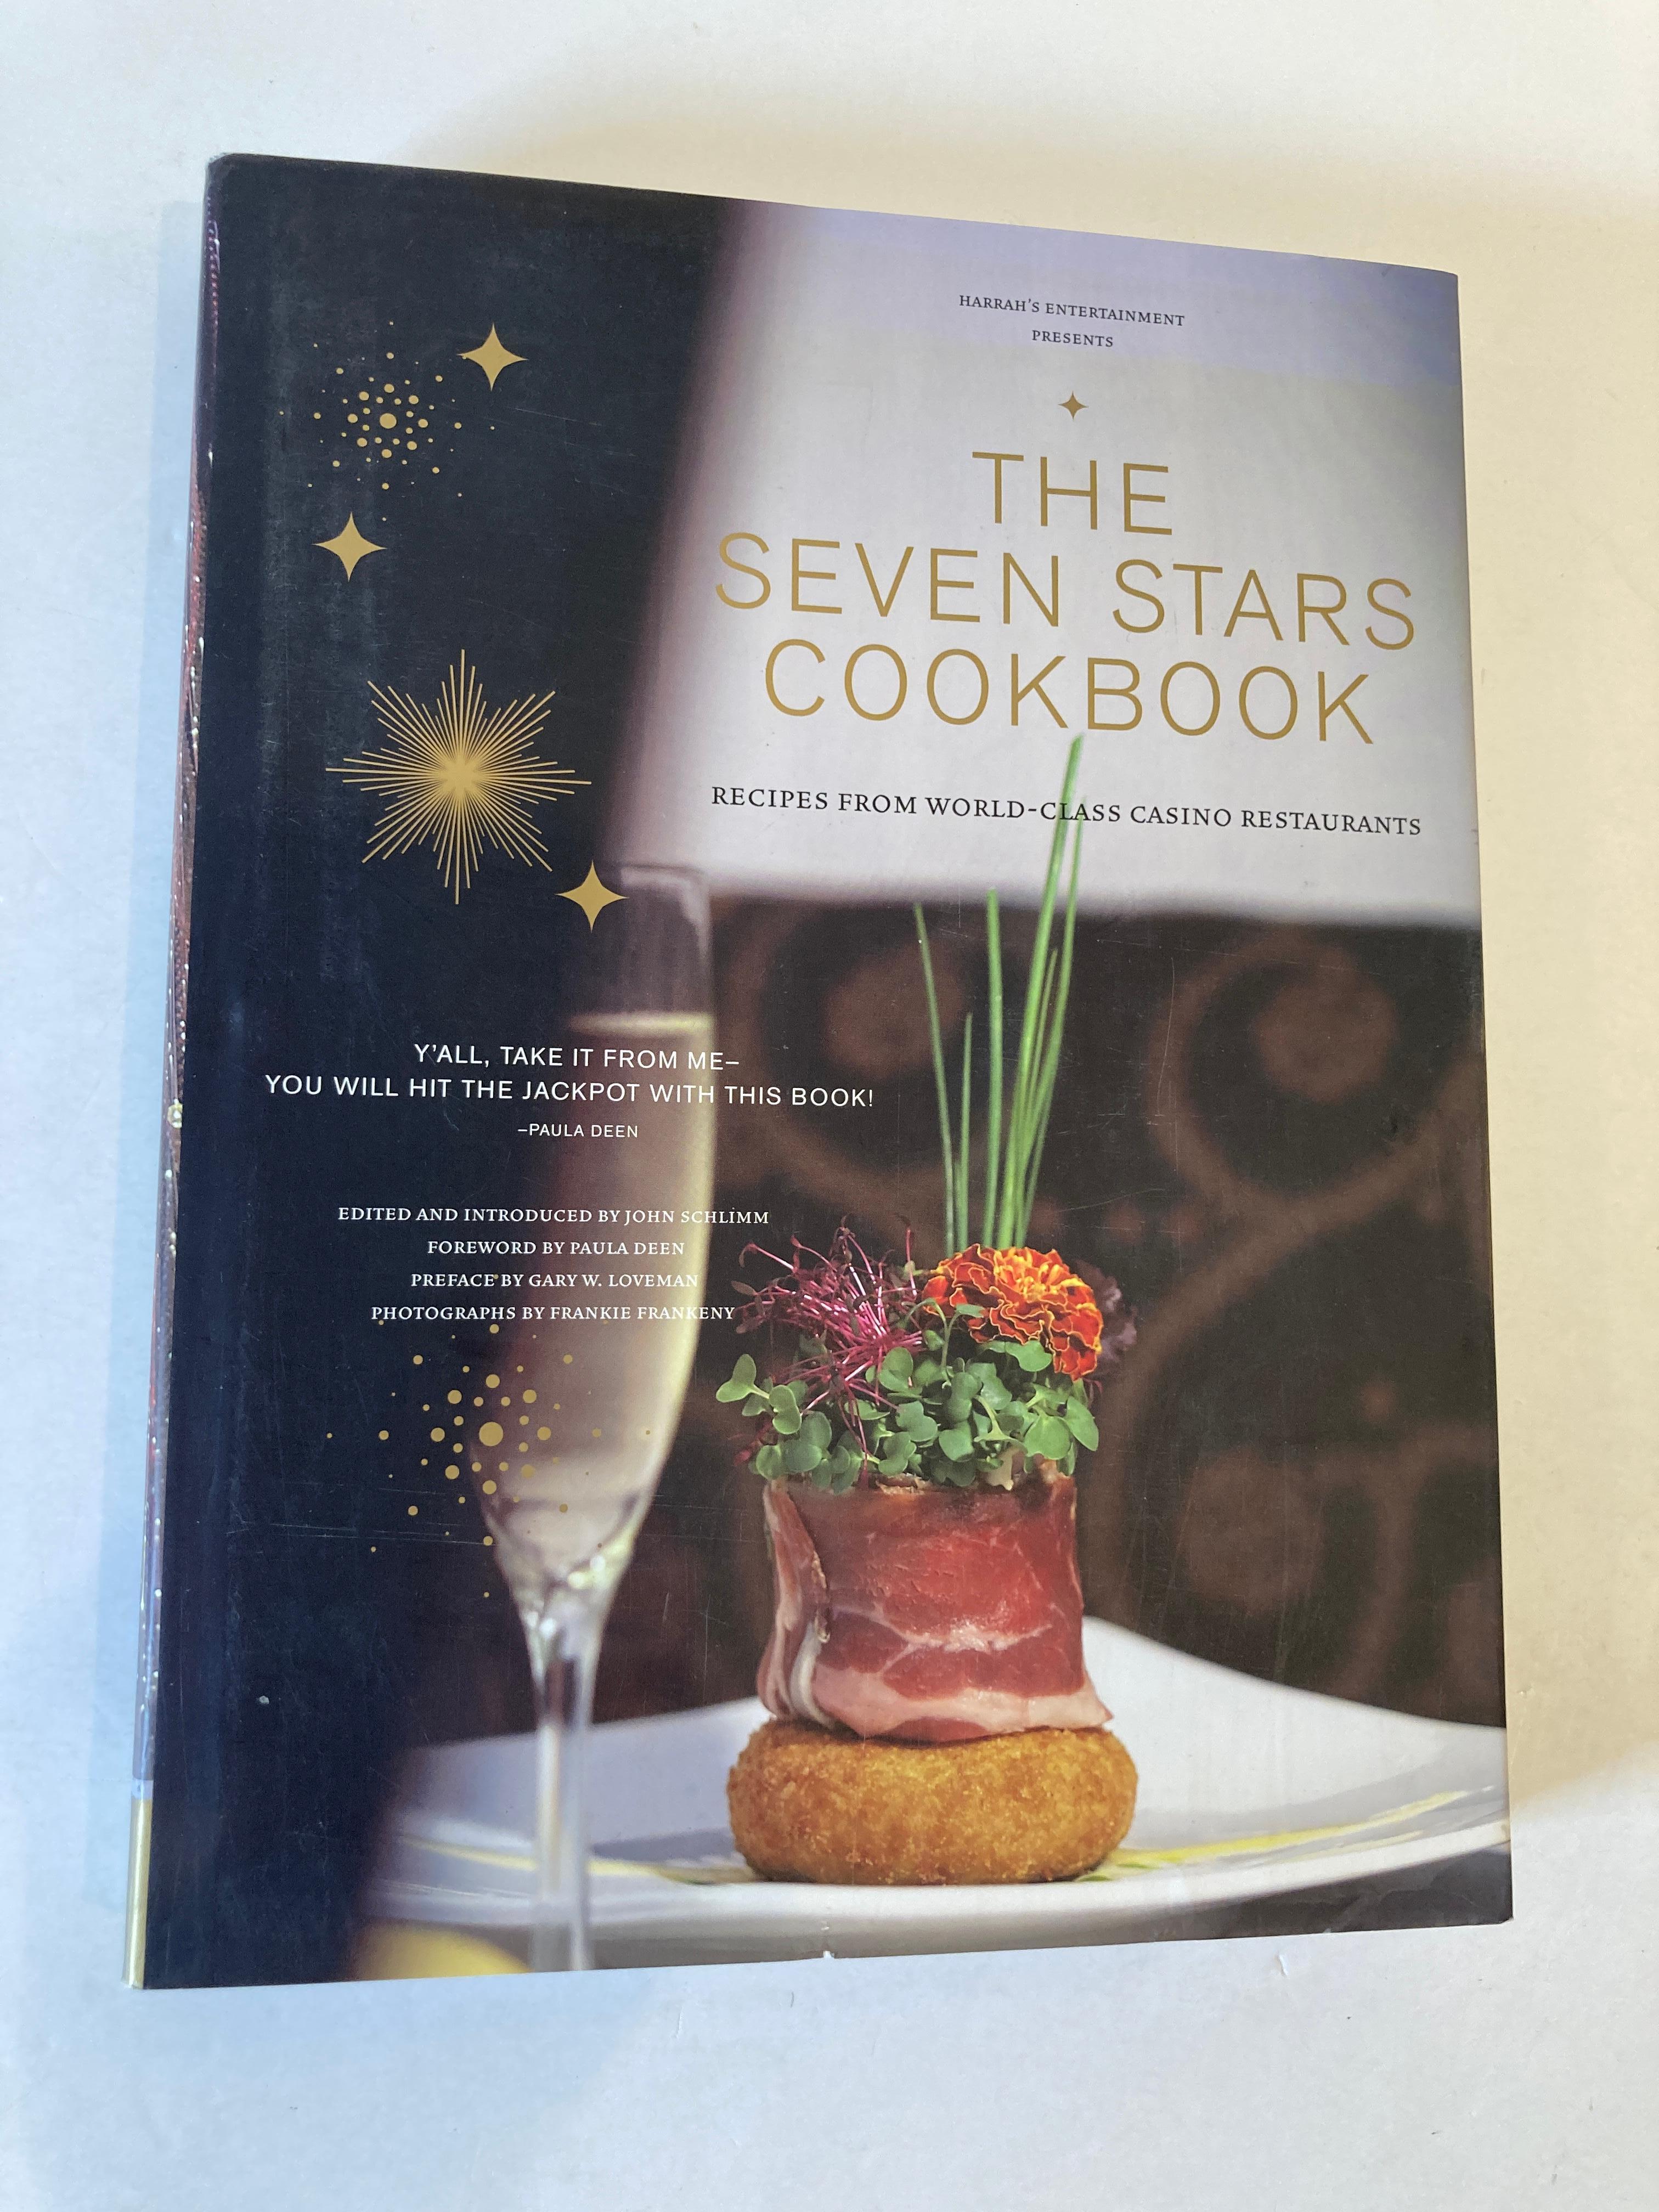 Le livre de cuisine Seven Stars : Les recettes des restaurants de casino de classe mondiale.
Harrah's Entertainment présente le livre de cuisine Seven Stars : Les recettes des restaurants de casino de classe mondiale.
John Schlimm
Chronicle